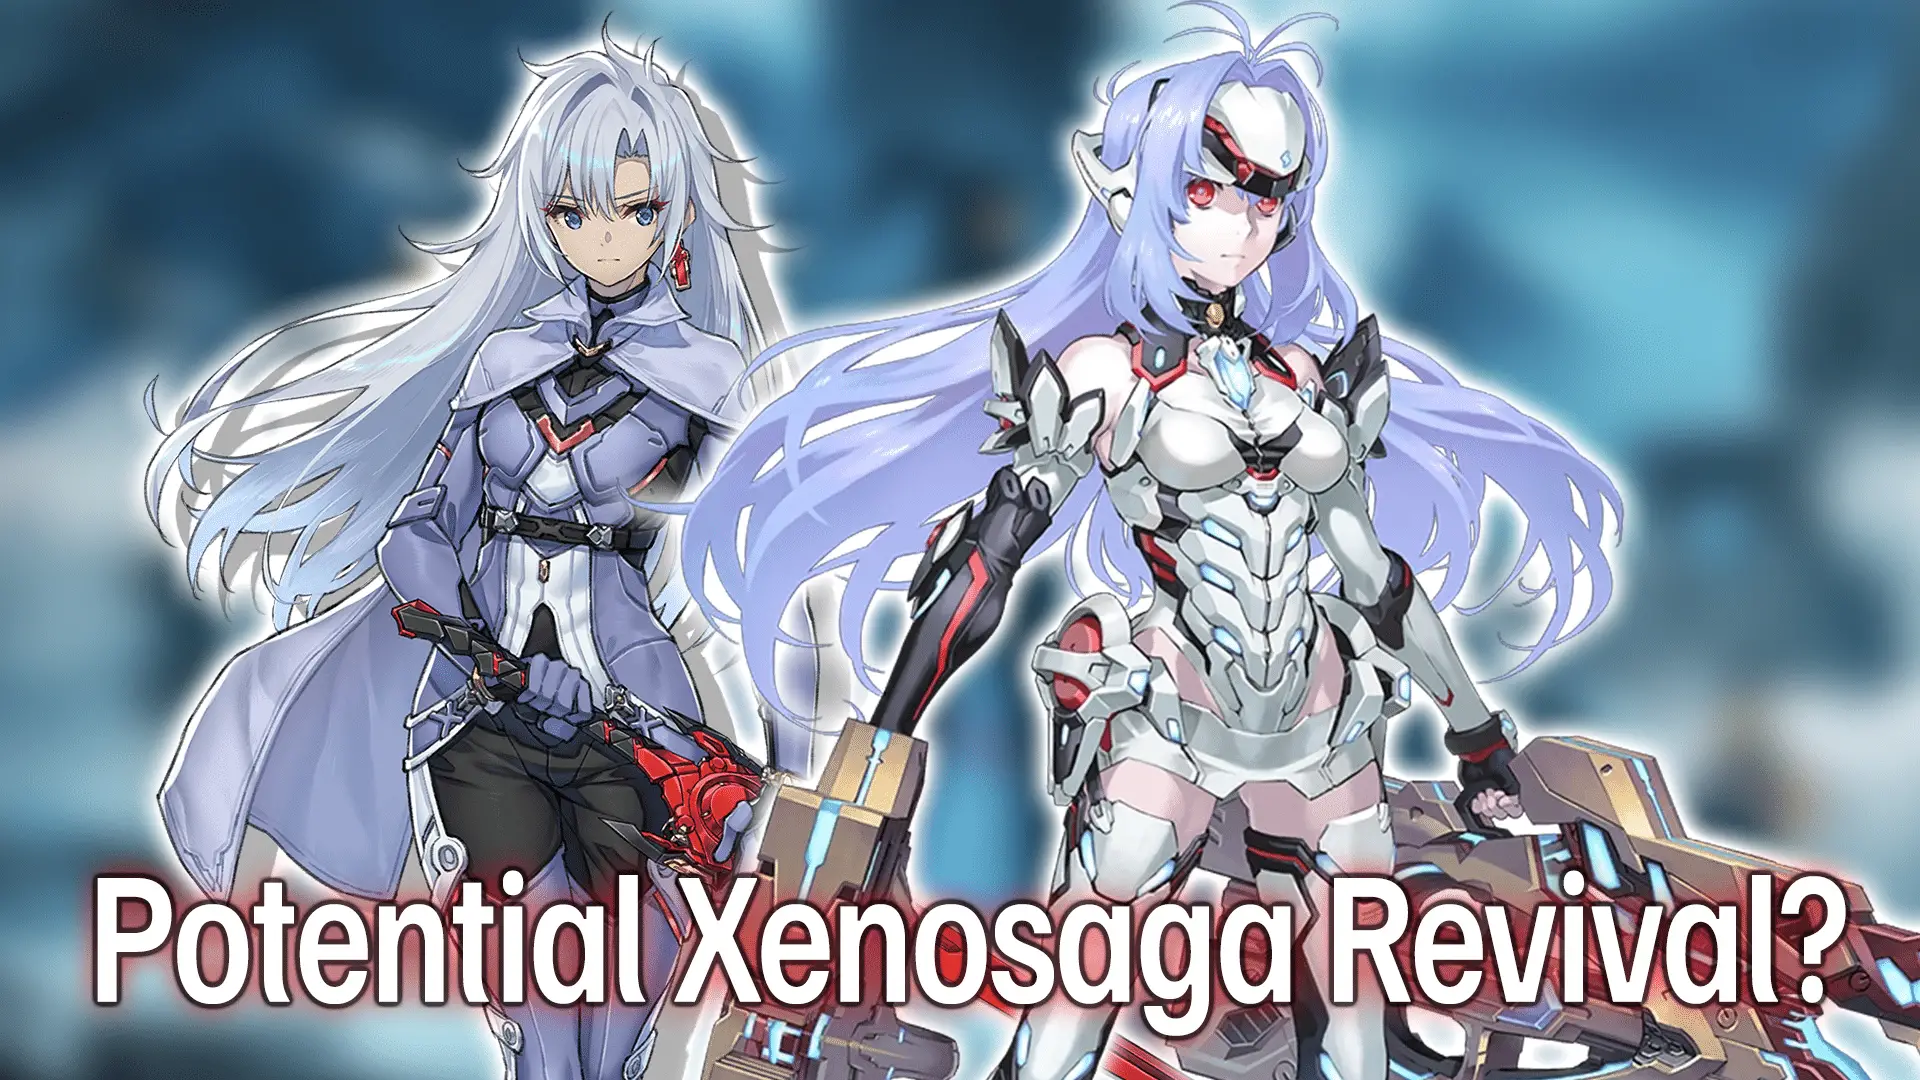 Xenoblade Chronicles 3: Future Redeemed - Xeno Series Wiki